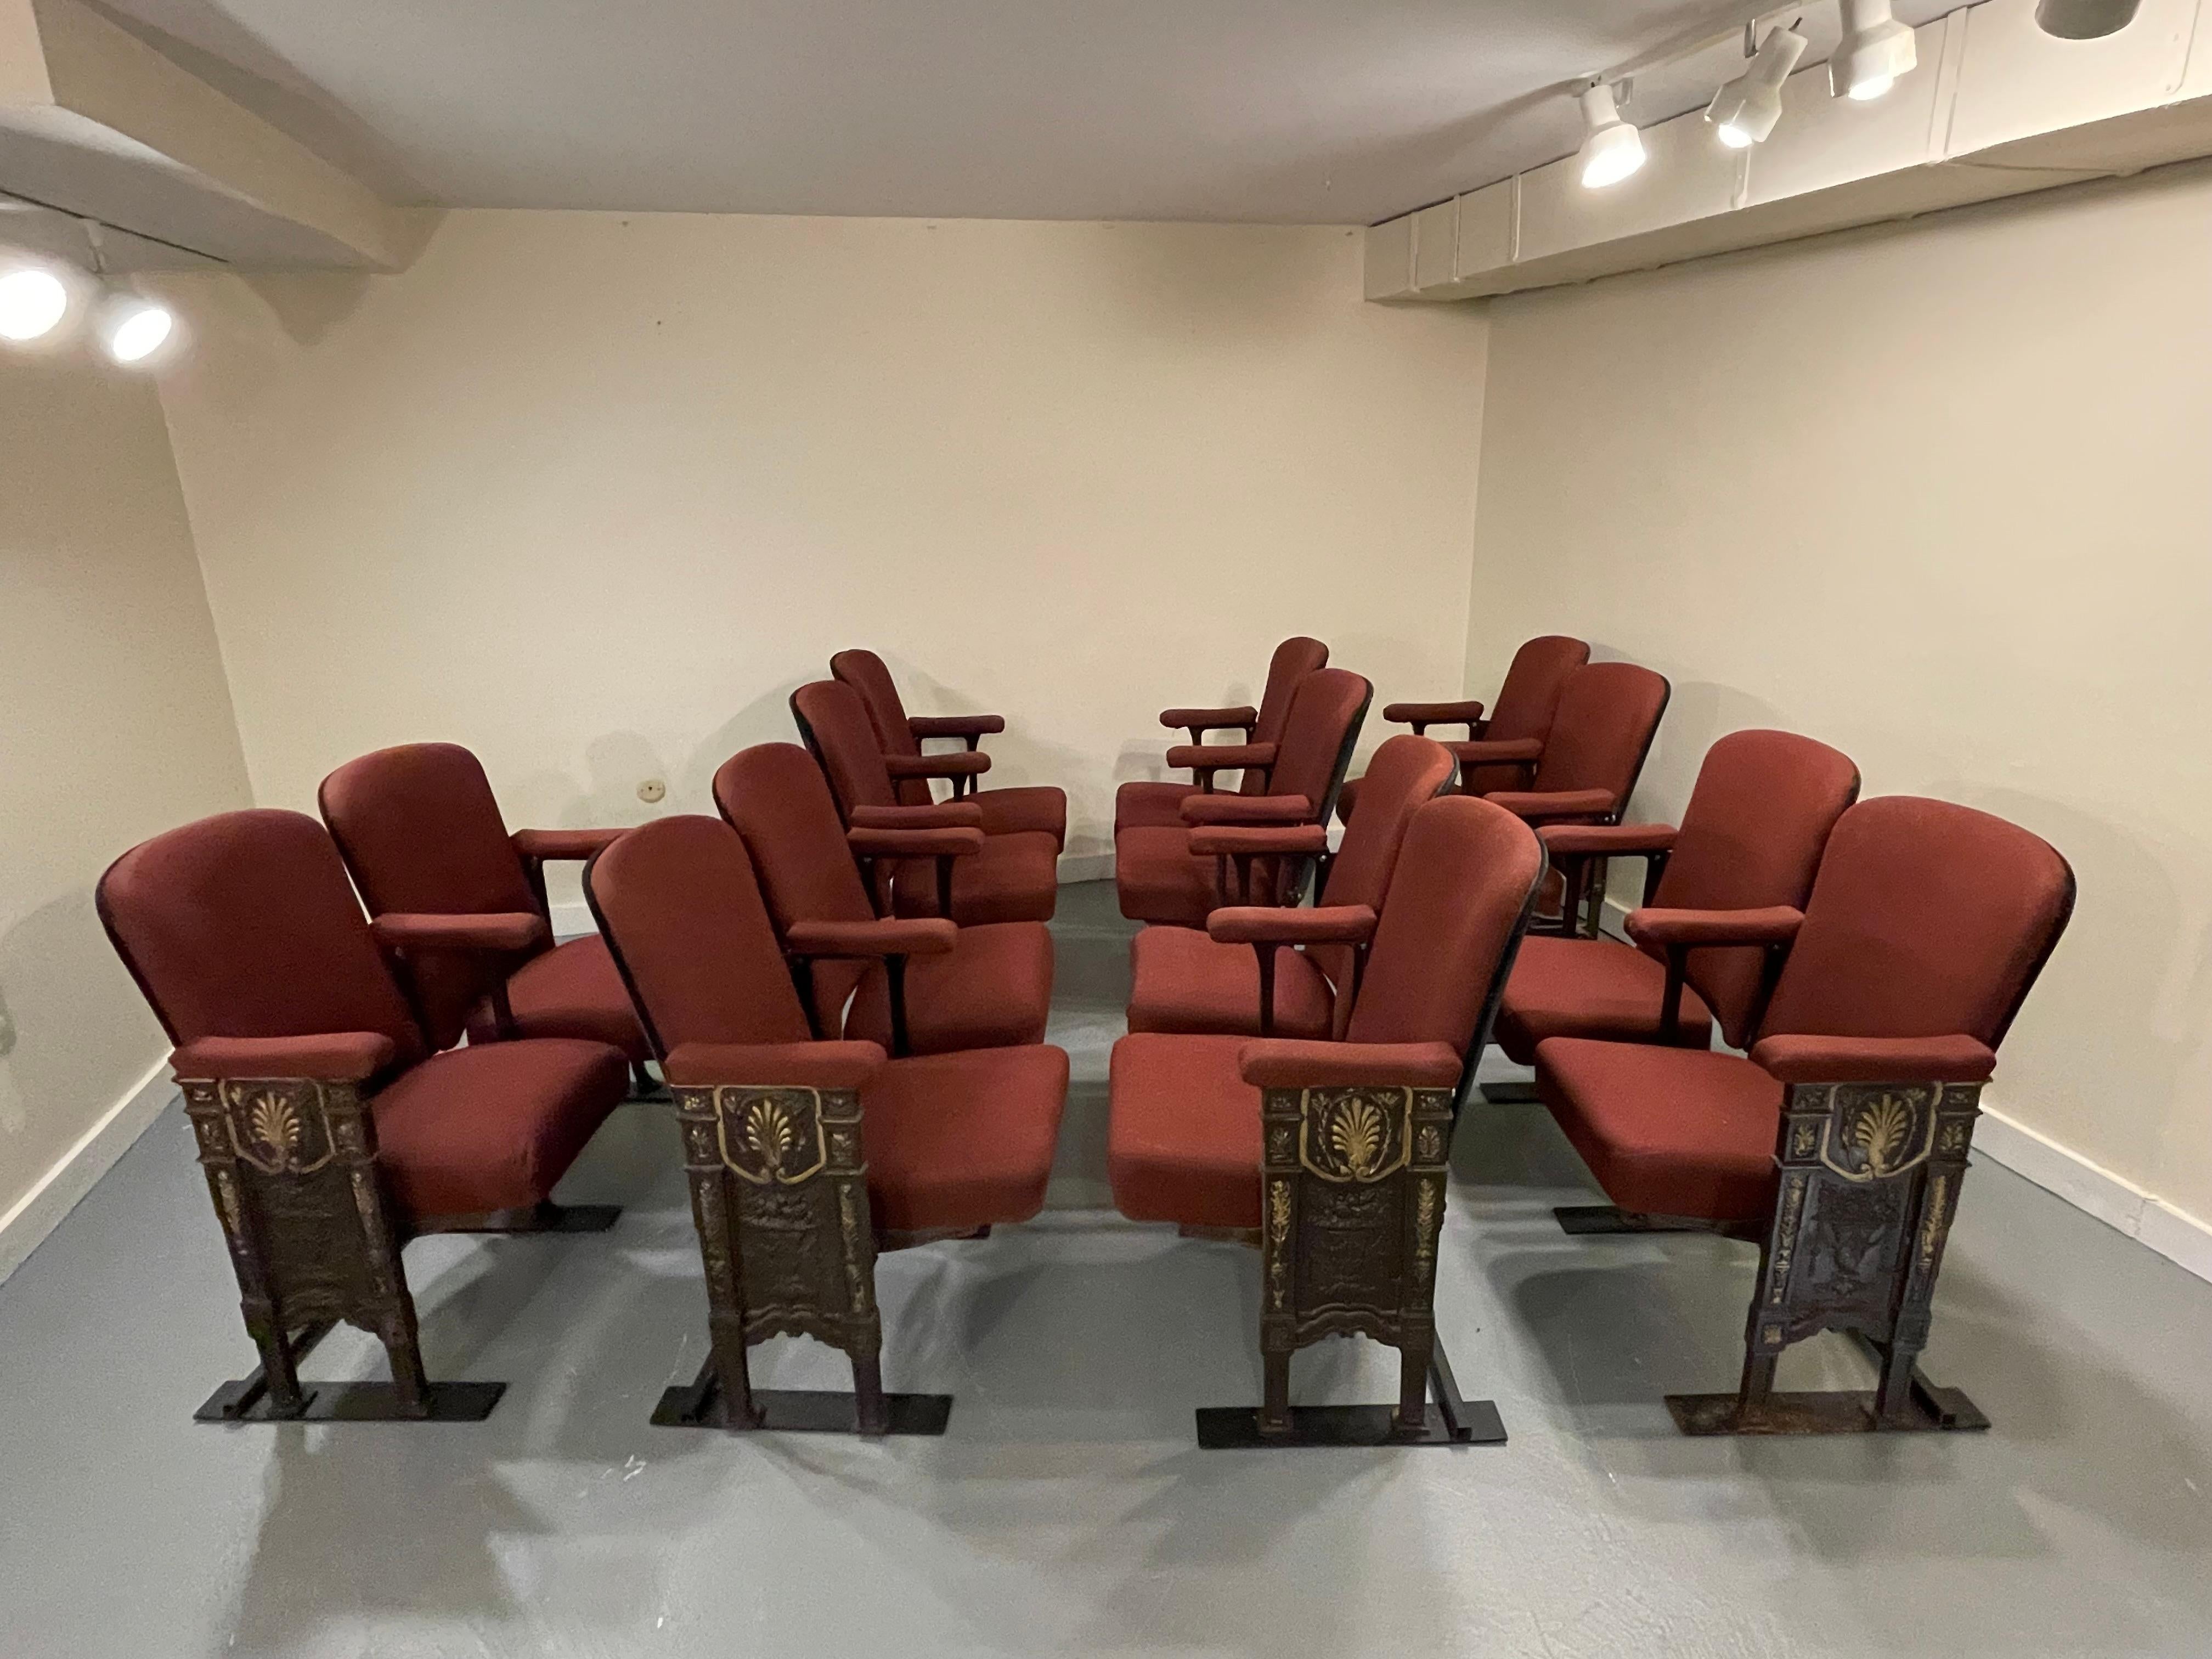 Upholstery Original Studio54 Newyork Art Deco Theater Seating Chairs